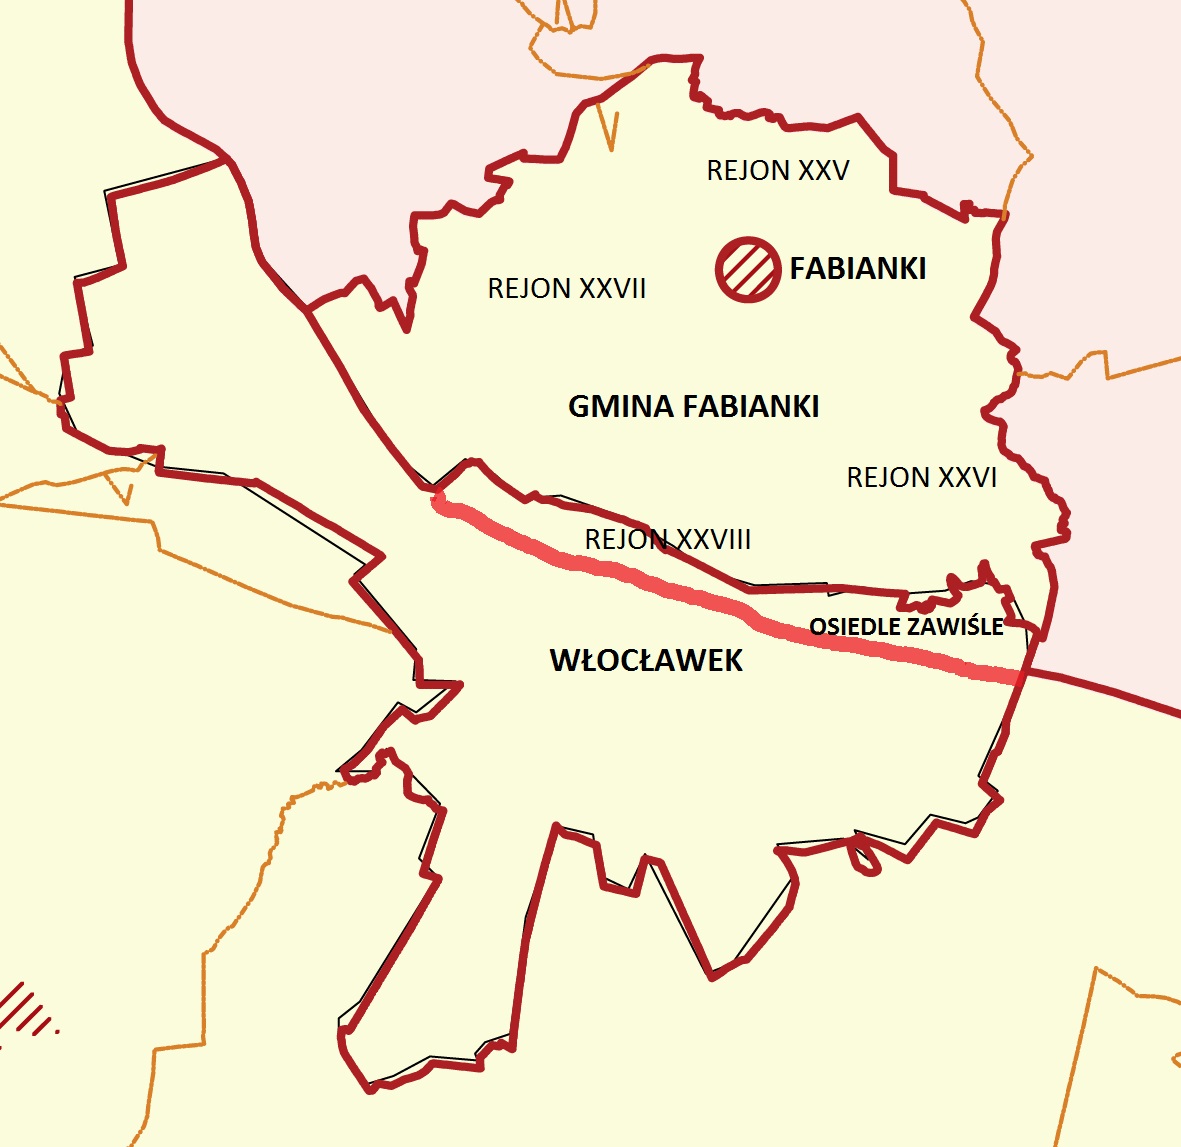 Mapa administracyjna Włocławka i gminy Fabianki z uwzględnieniem dzielnic podległych Trzeciemu Rewirowi Dzielnicowych